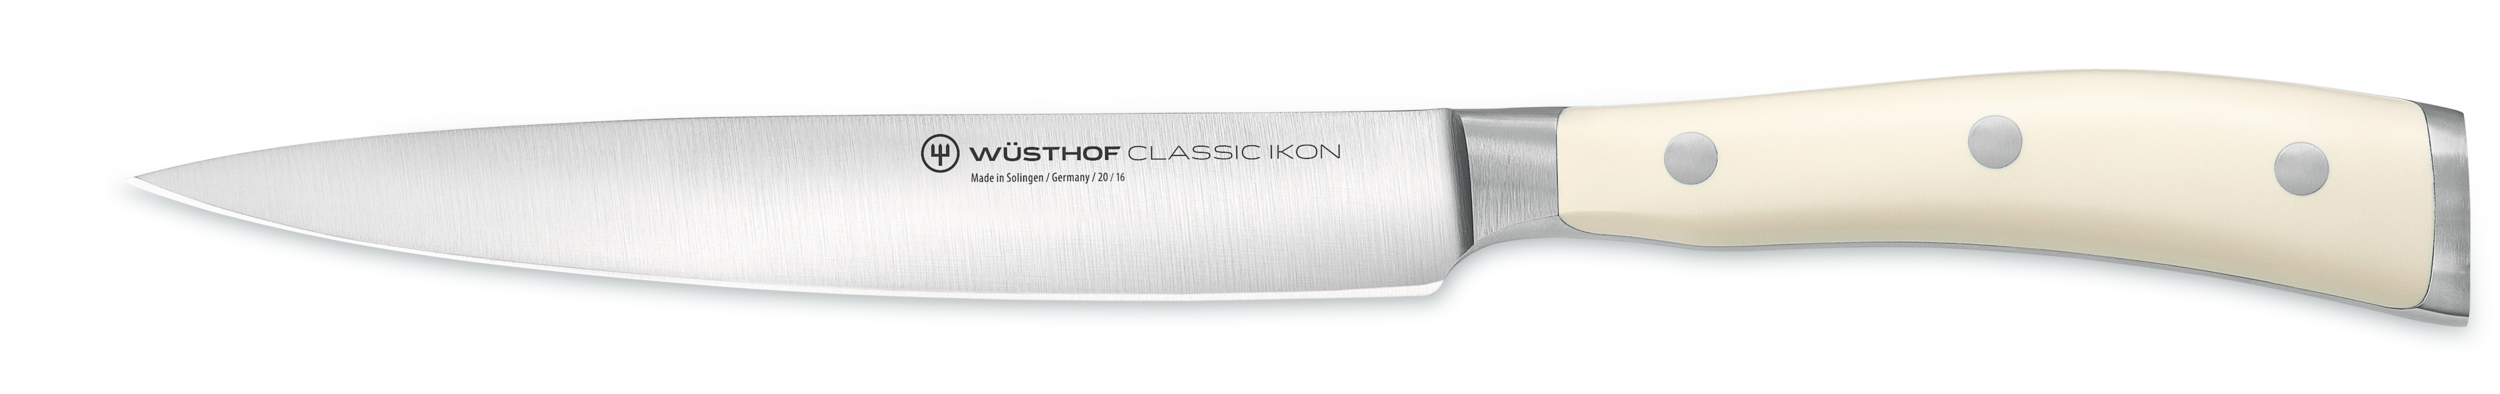 Wusthof Classic Ikon Creme Utility Knife 16cm